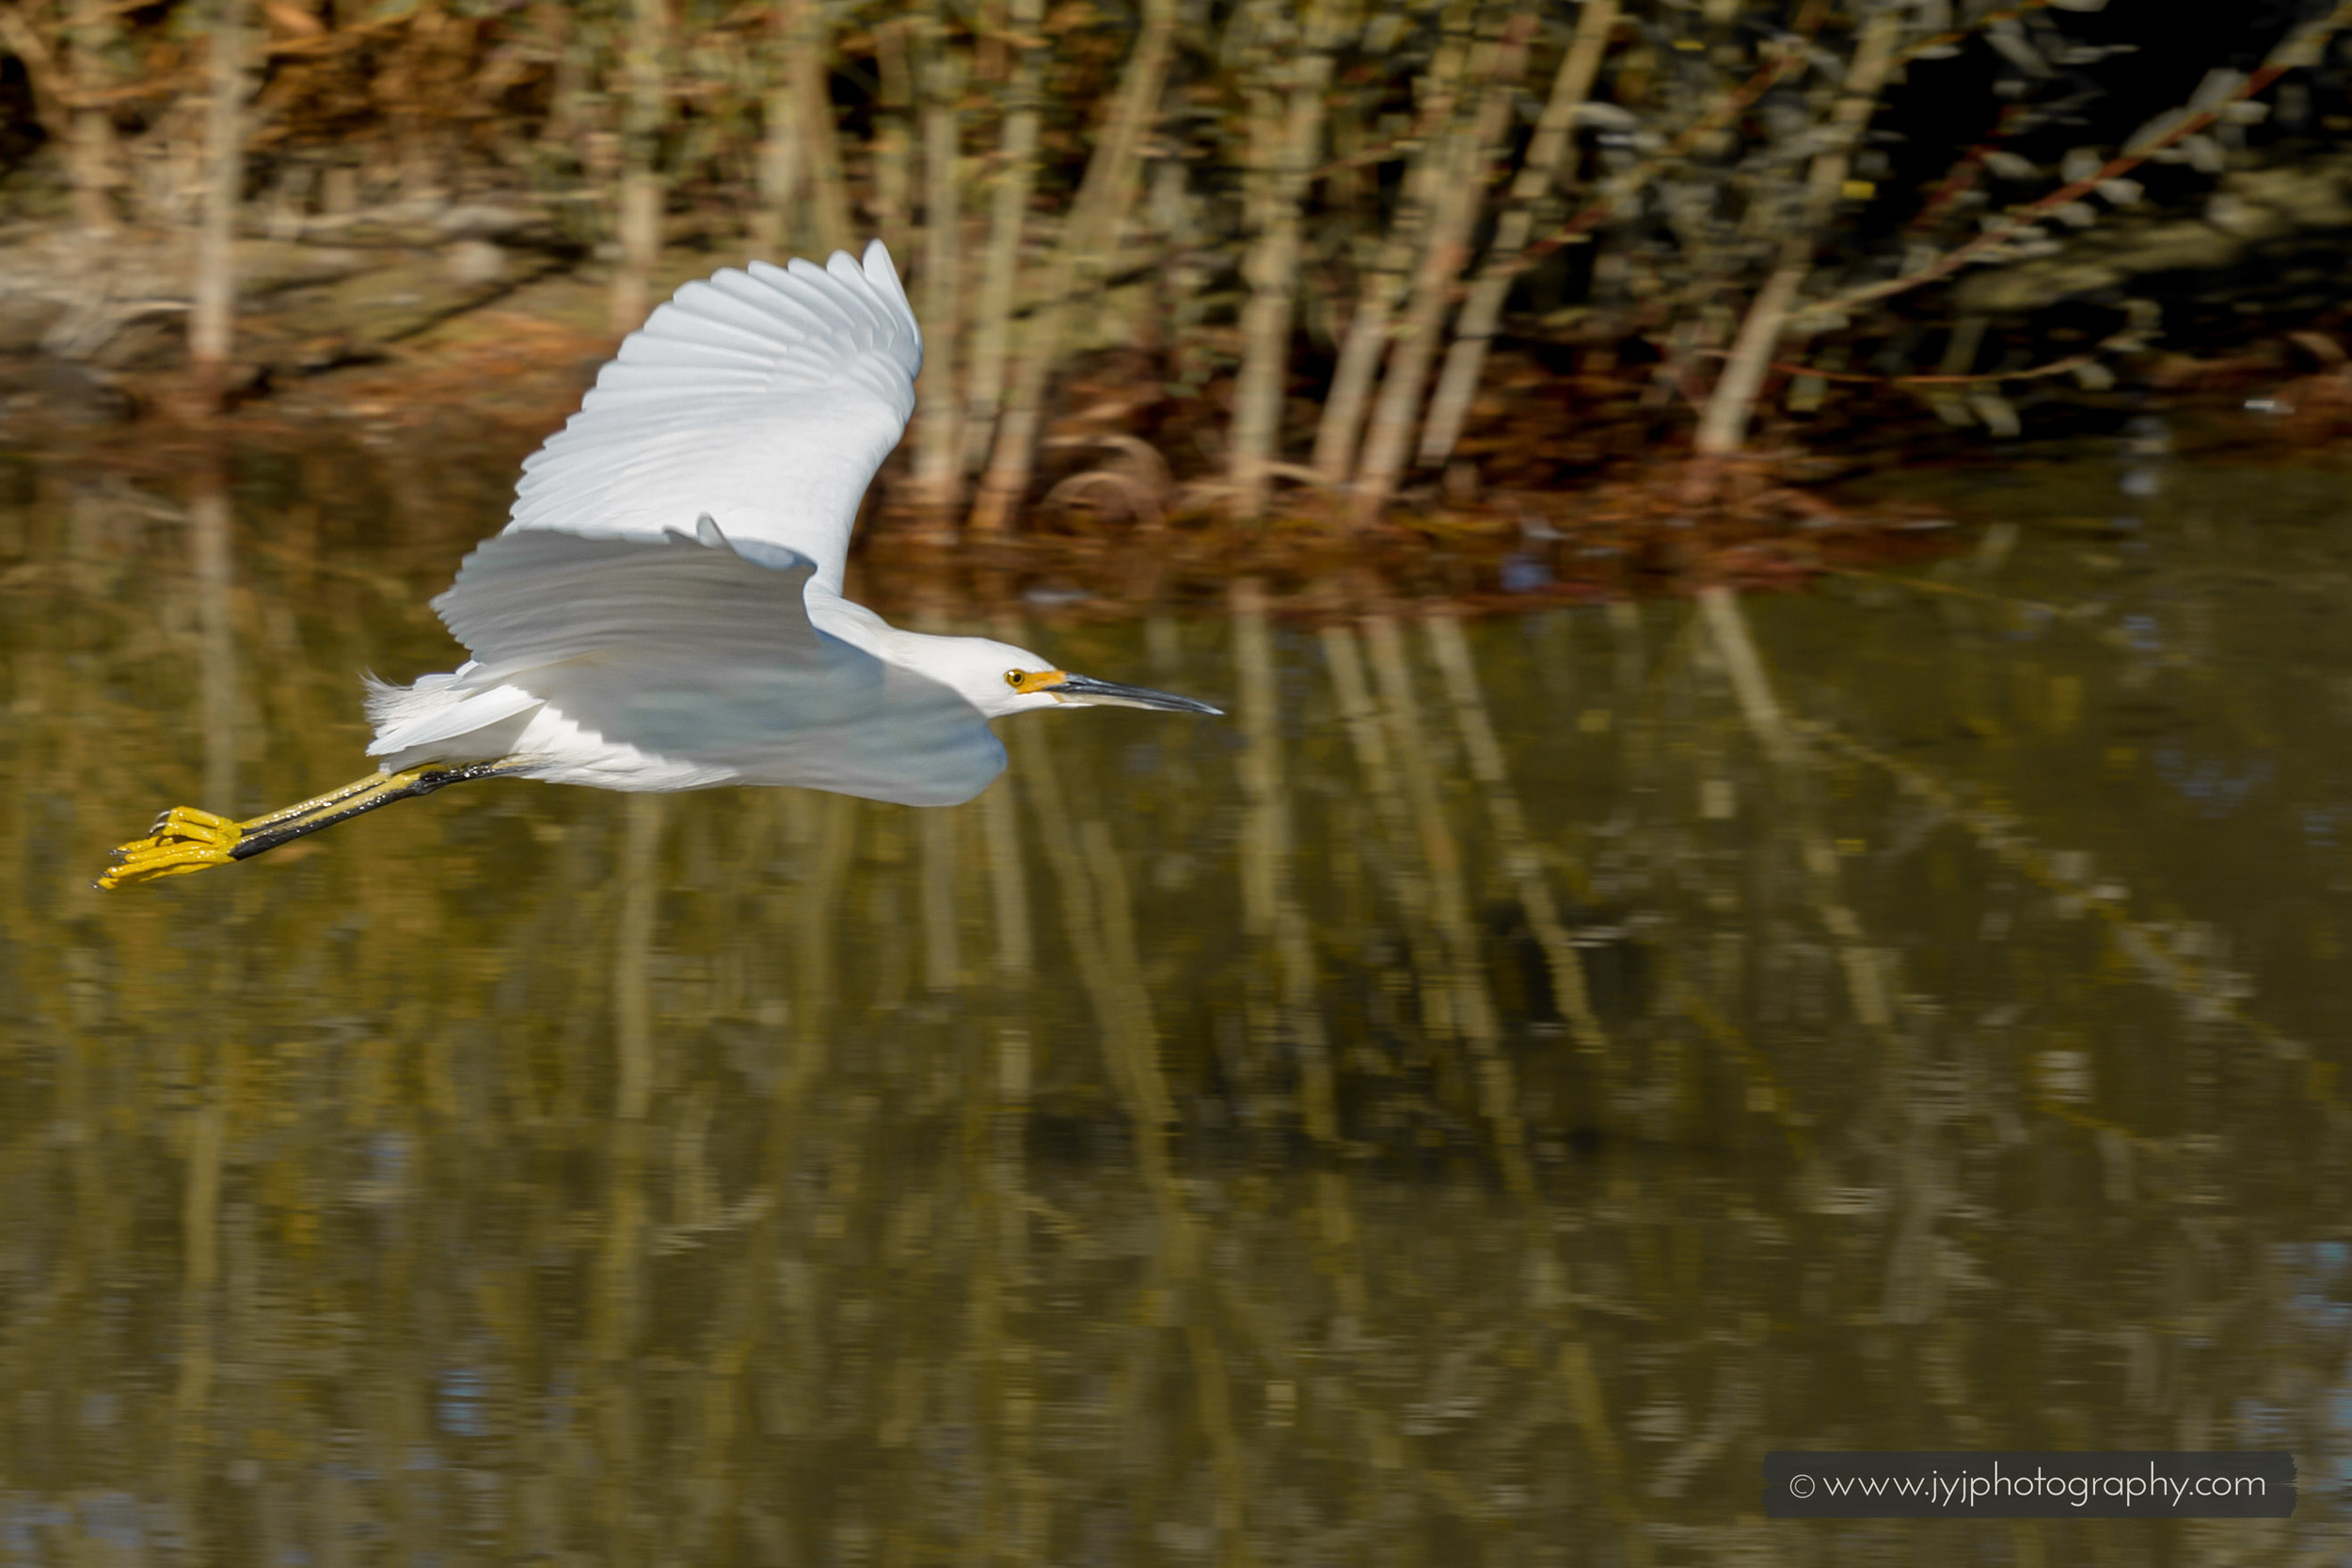  Snowy Egret in flight. 